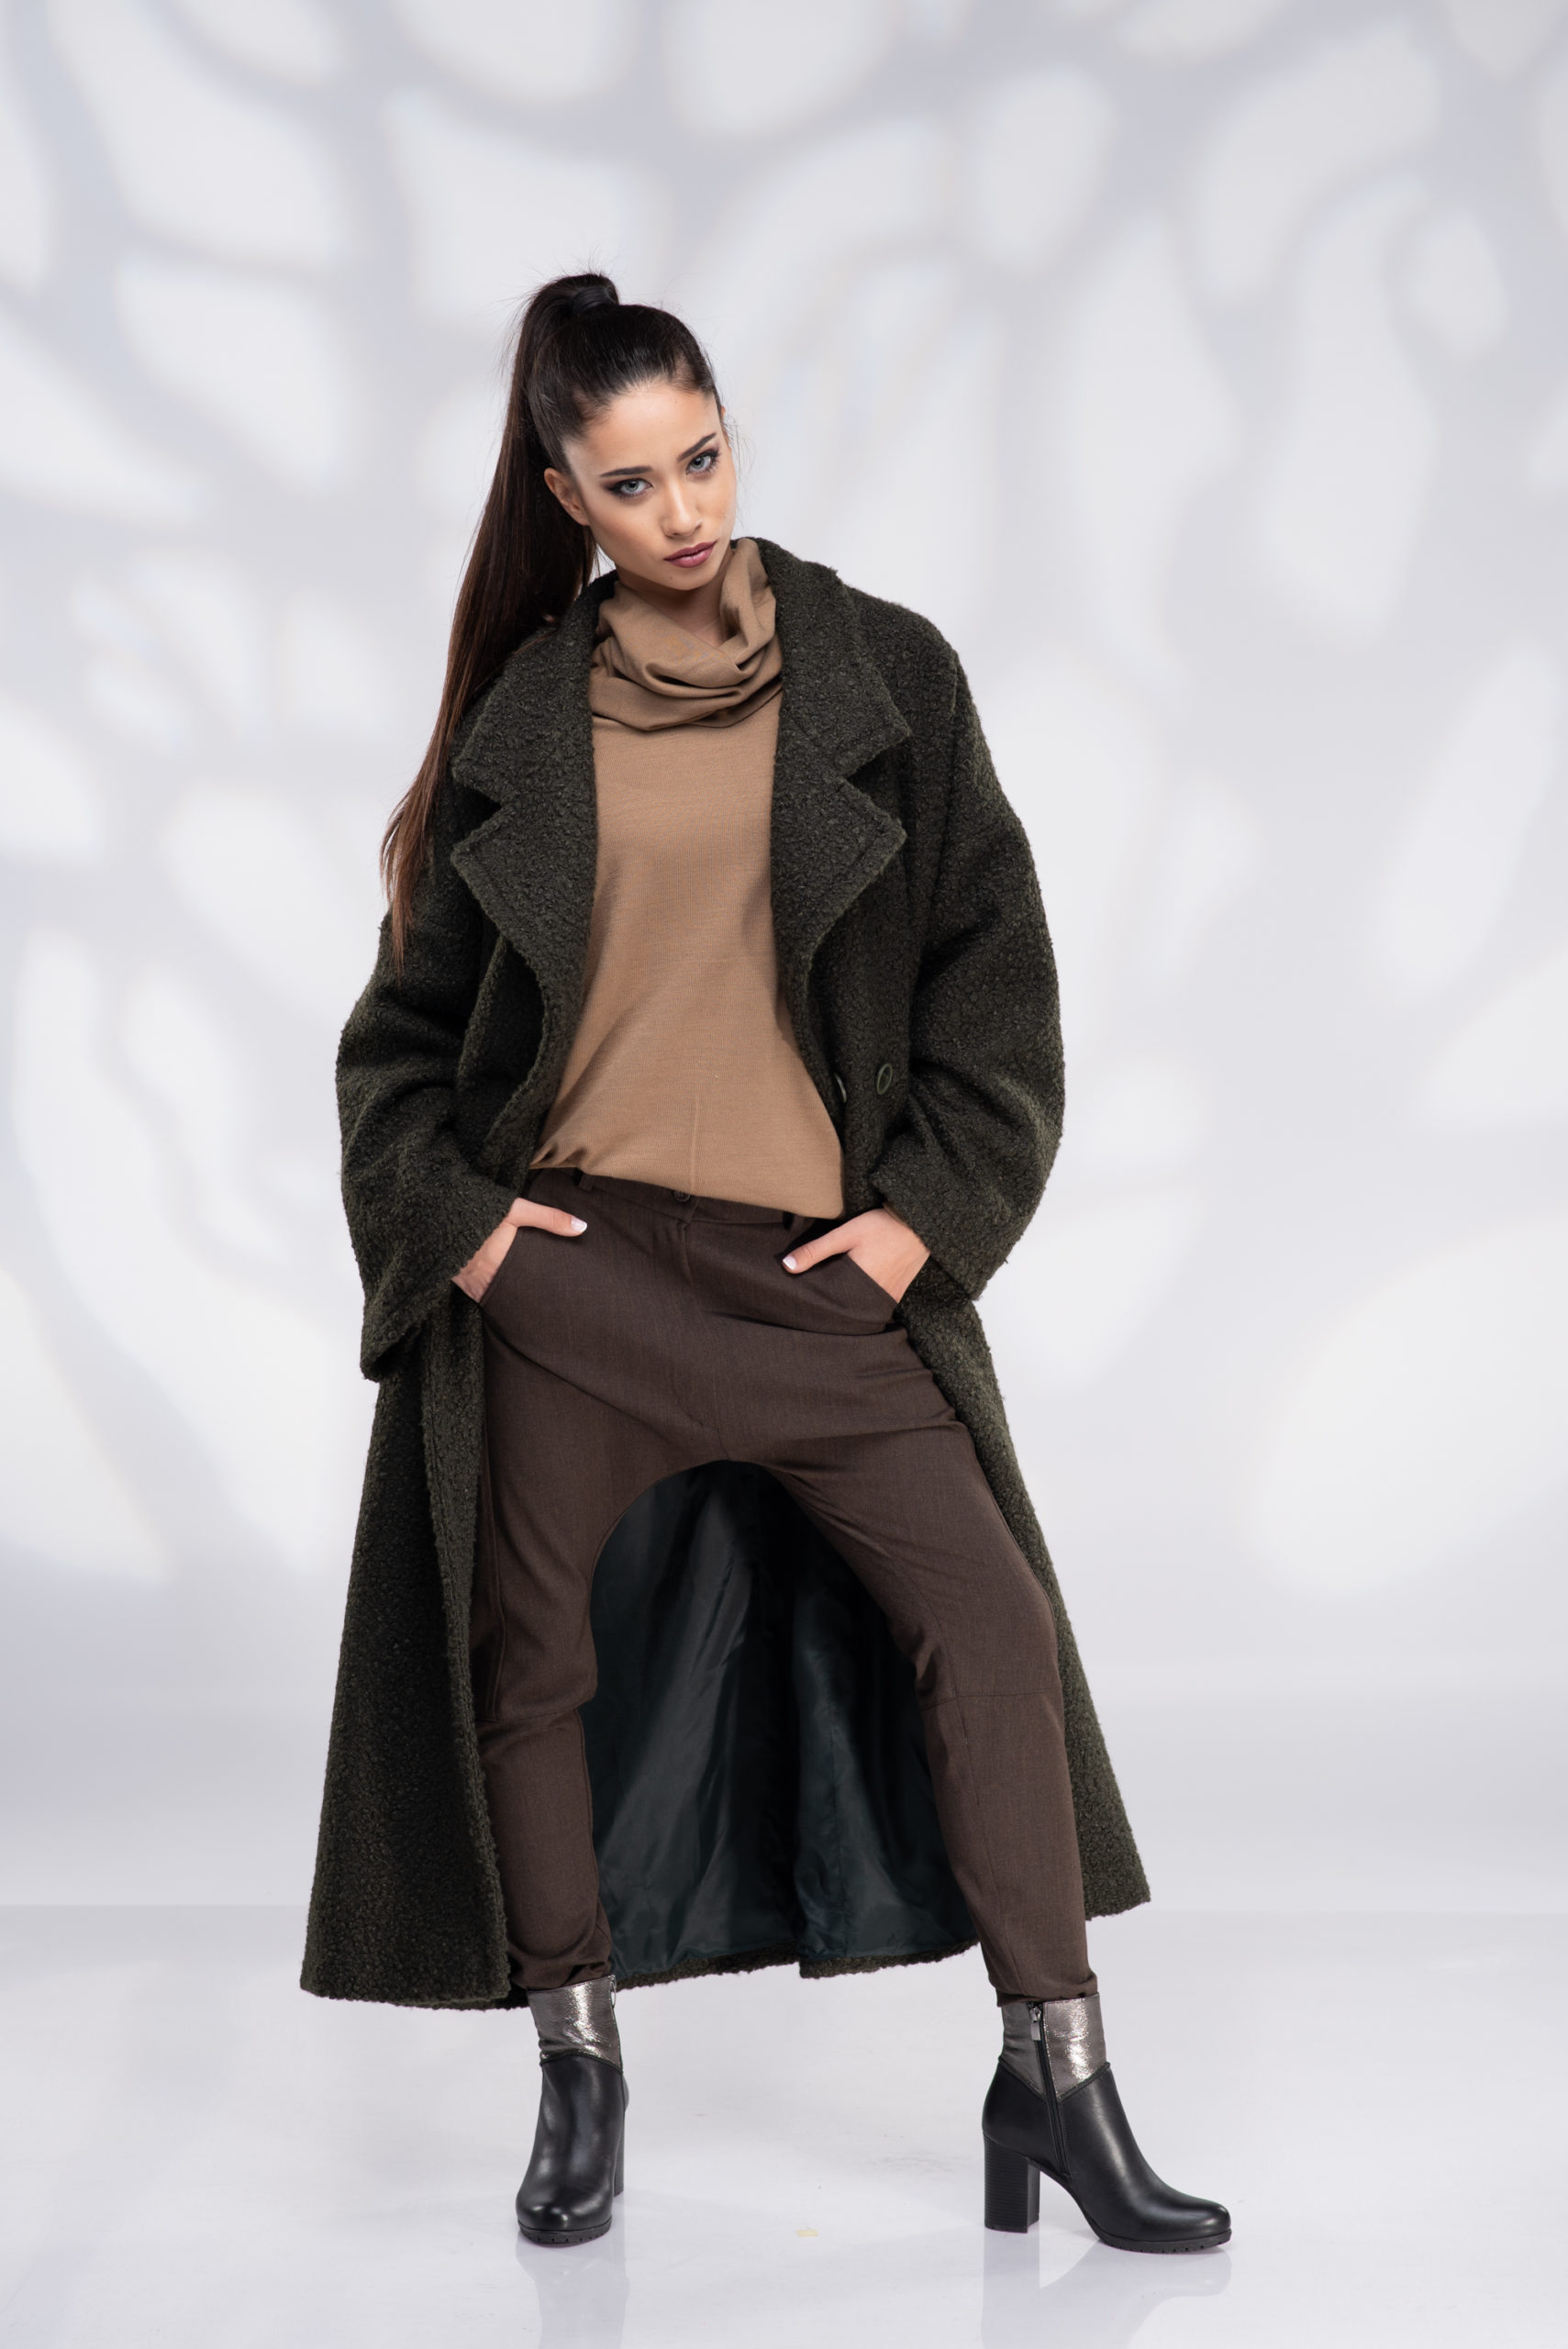 Winter Coat, Black Hooded Coat, Wool Coat, Fur Coat, Women Black Coat, Plus  Size Clothing, Oversized Coat, Gothic Clothing, Elegant Coat 